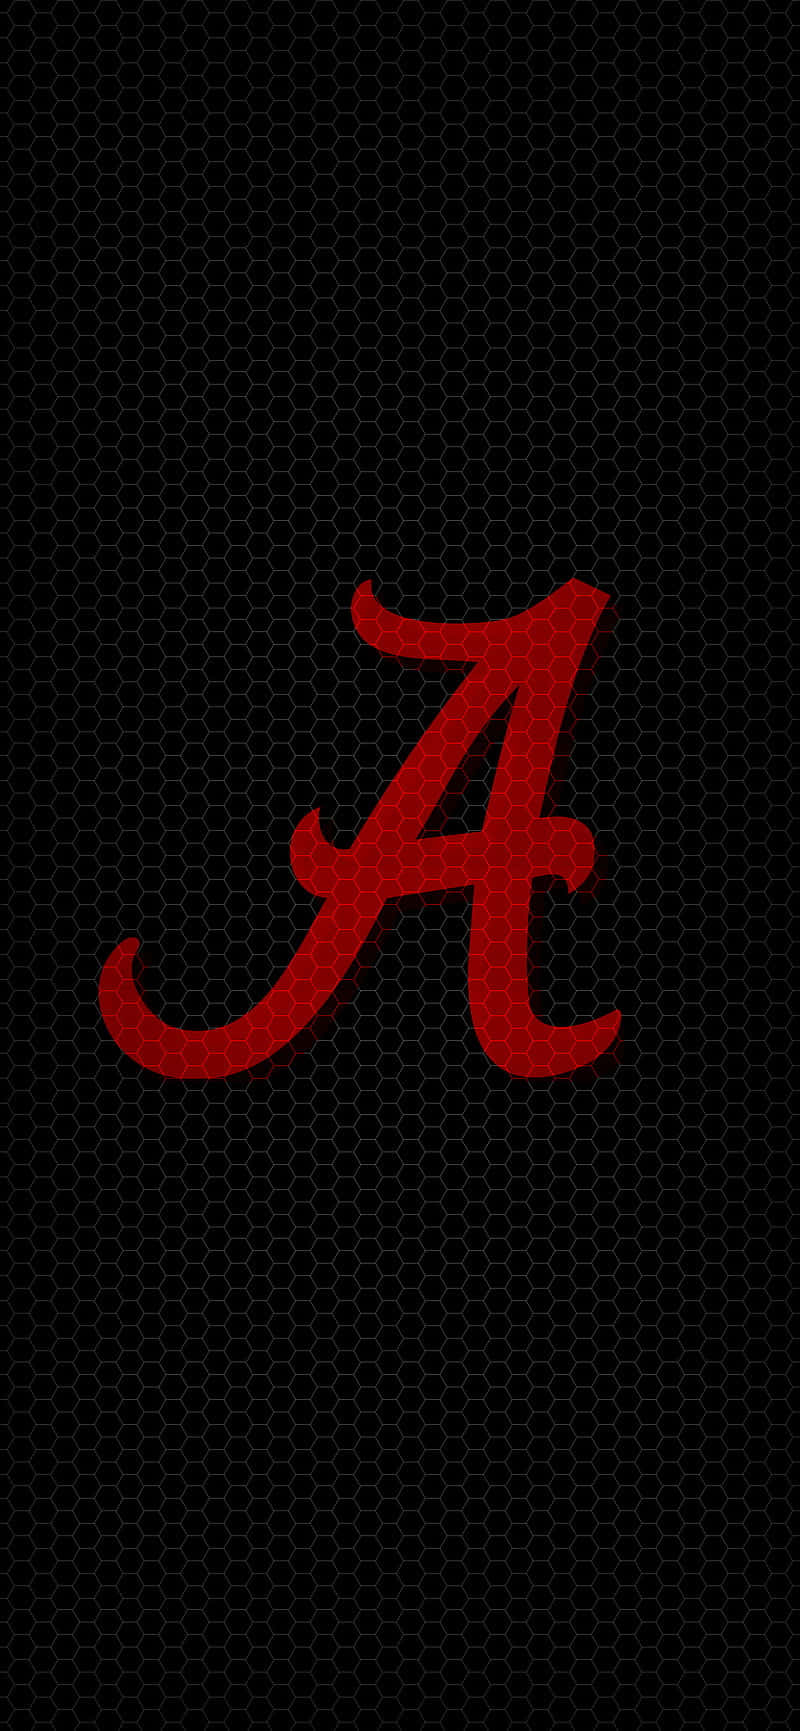 Prepáratepara El Día Del Juego Con La Aplicación Alabama Crimson Tide Football Para Tu Iphone. Fondo de pantalla